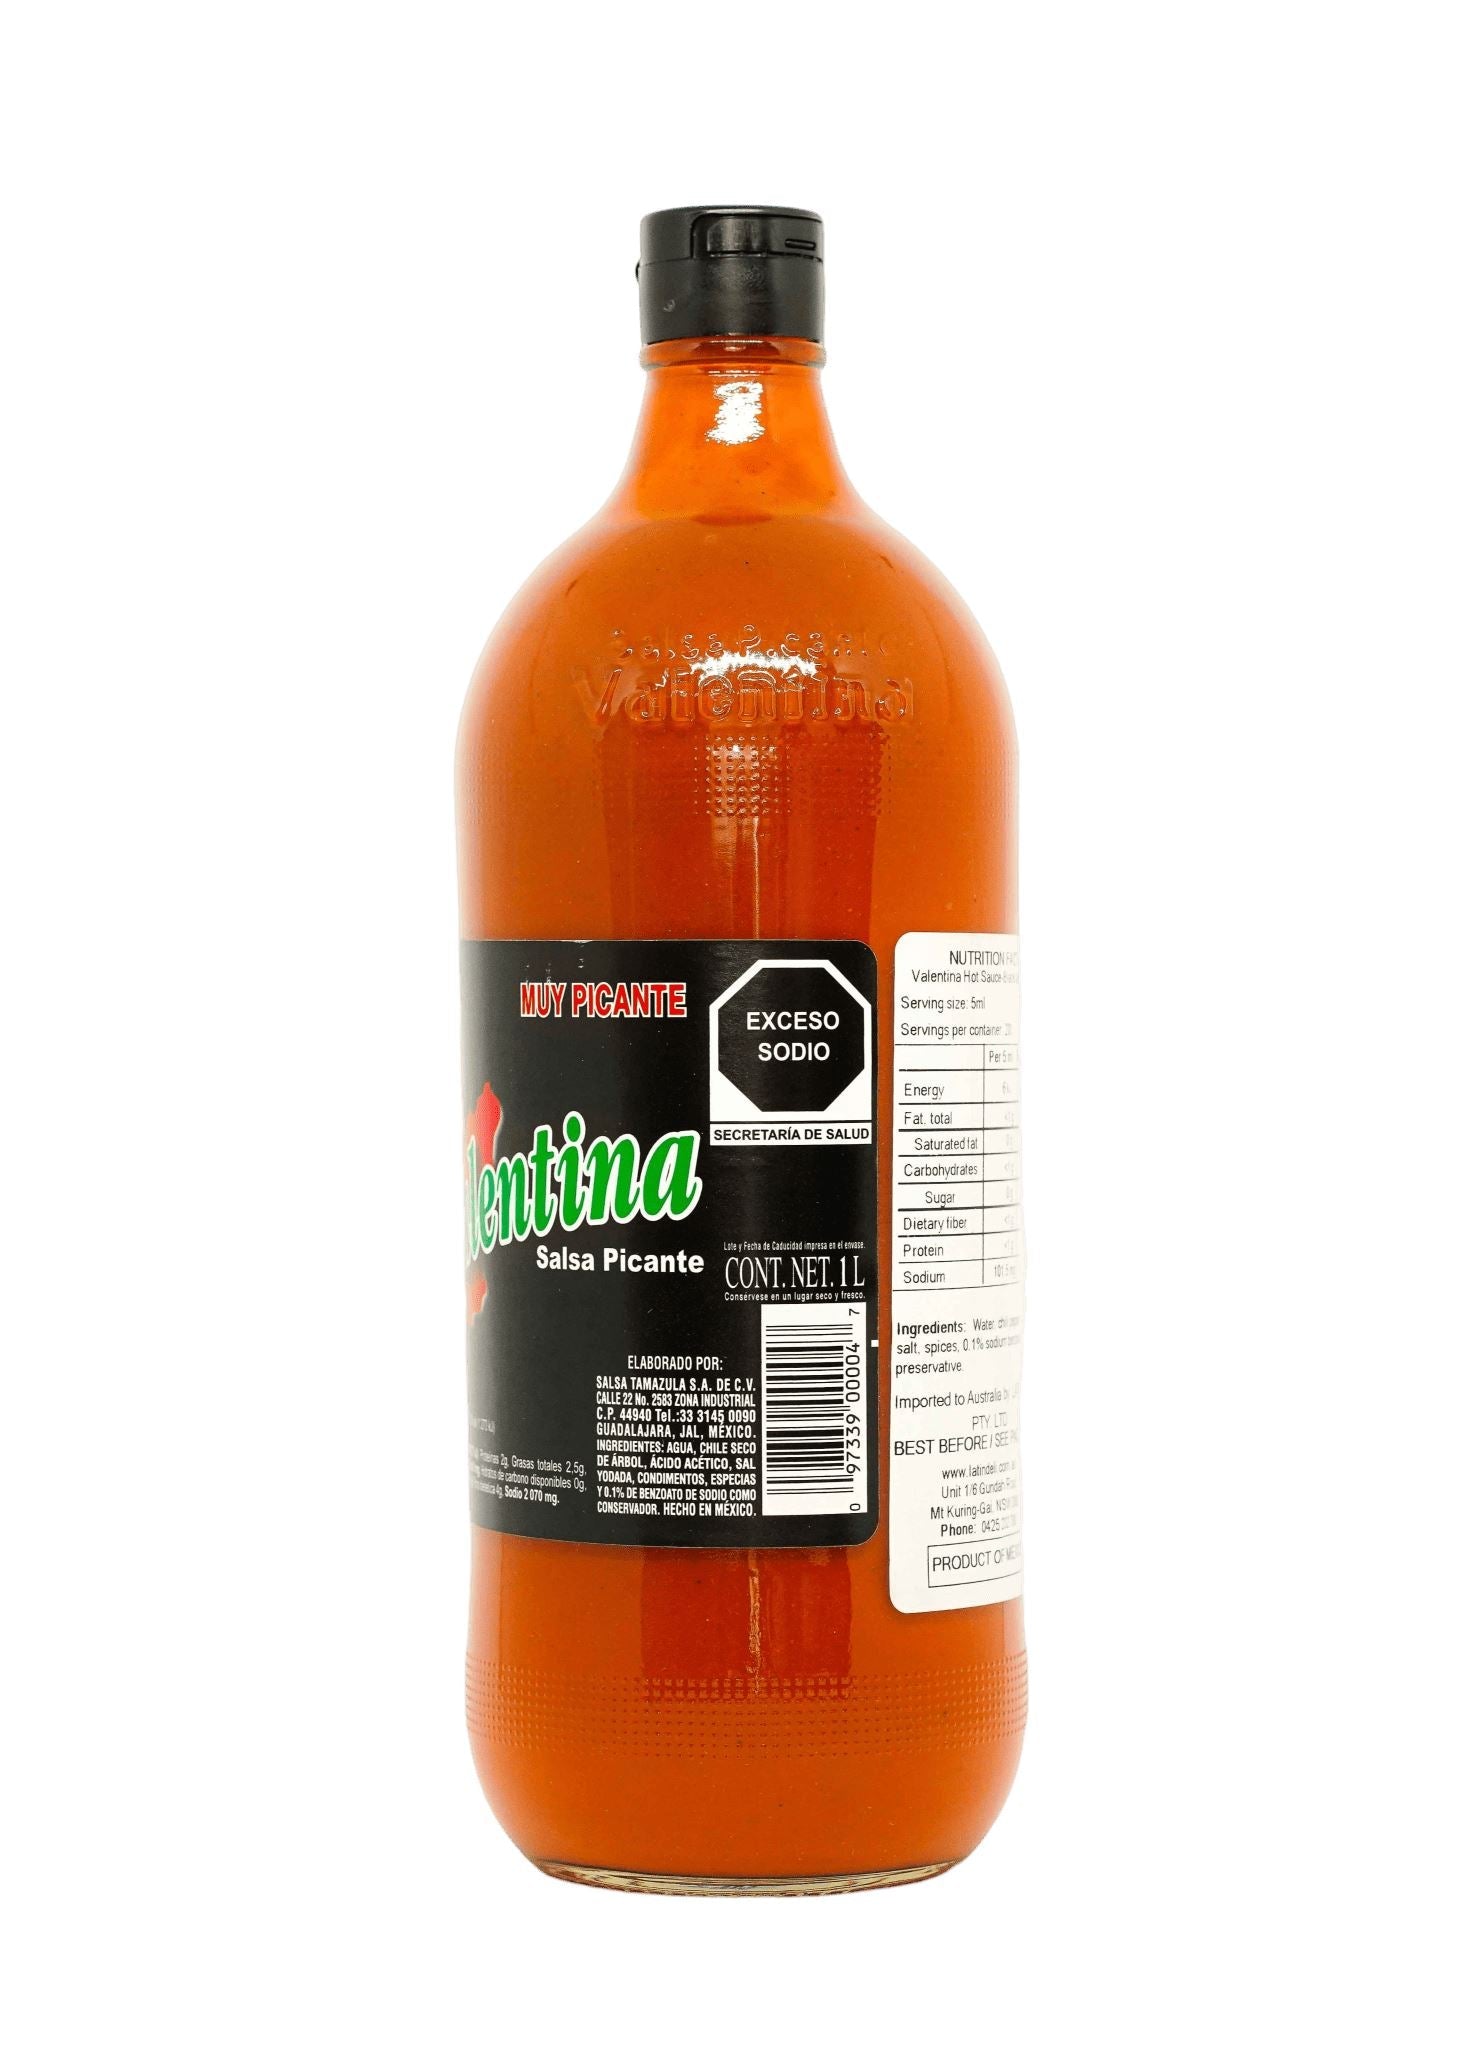 Valentina Hot Sauce - Black Label 370ml / 1L Sauces Tamazula Group 